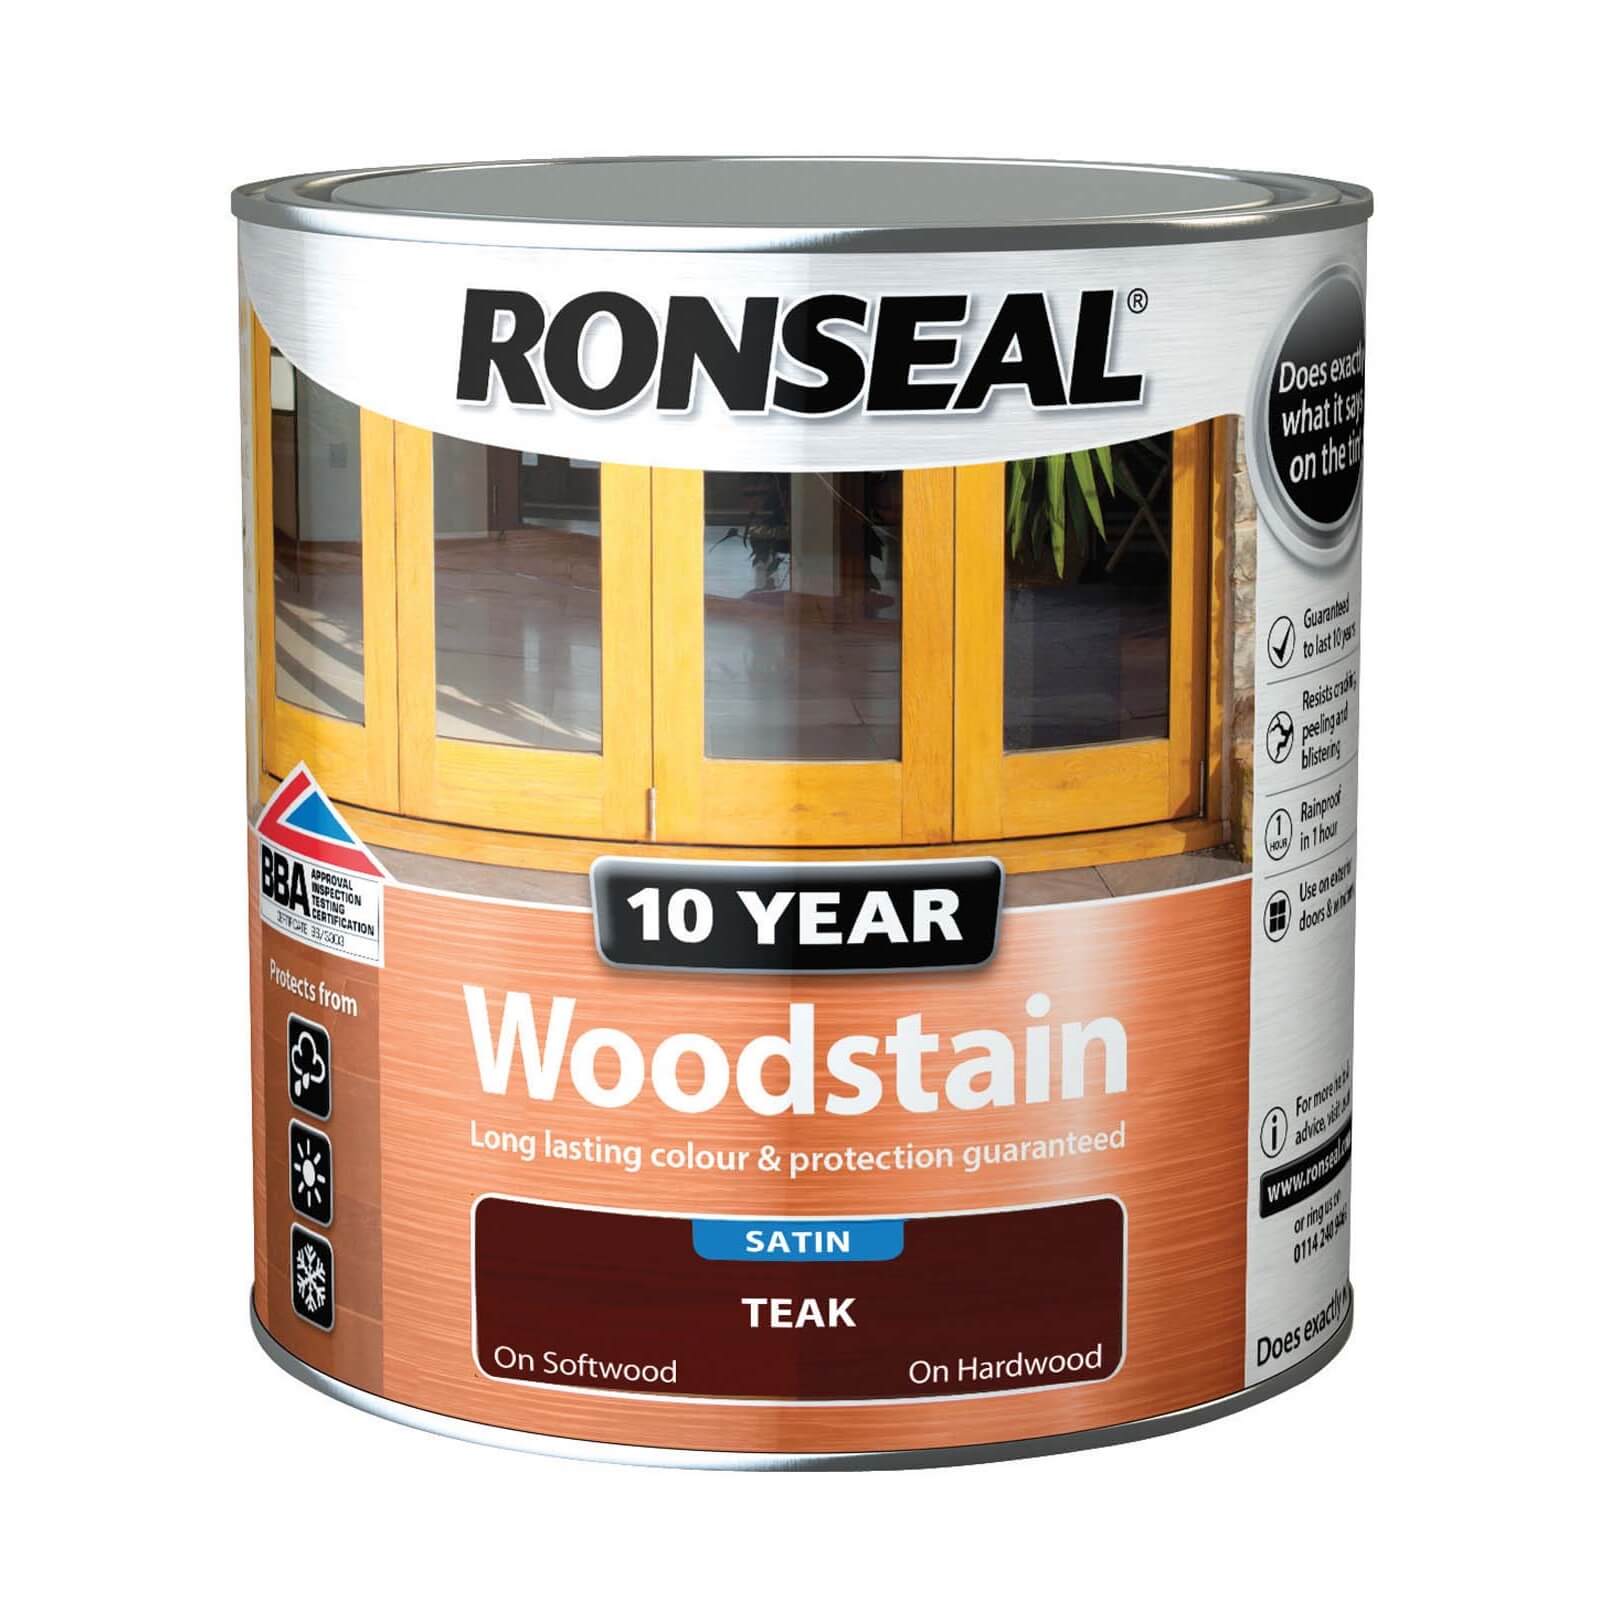 Ronseal 10 Year Woodstain Teak Satin -  750ml